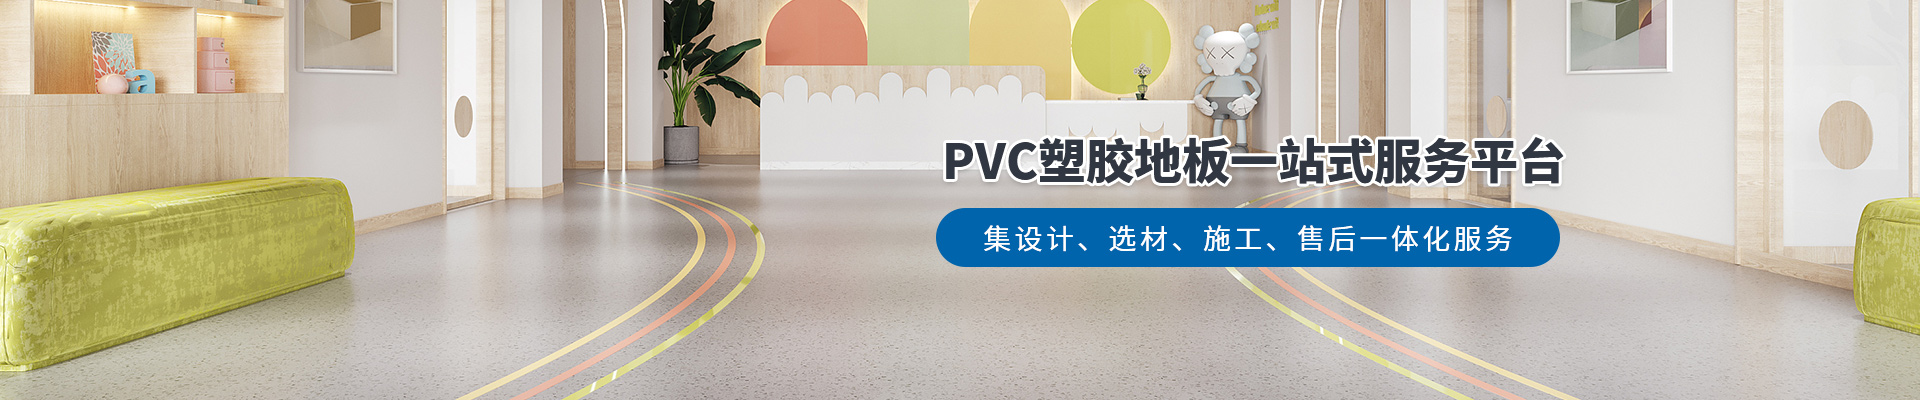 鳳城橡塑，PVC塑膠地板一站式服務平臺